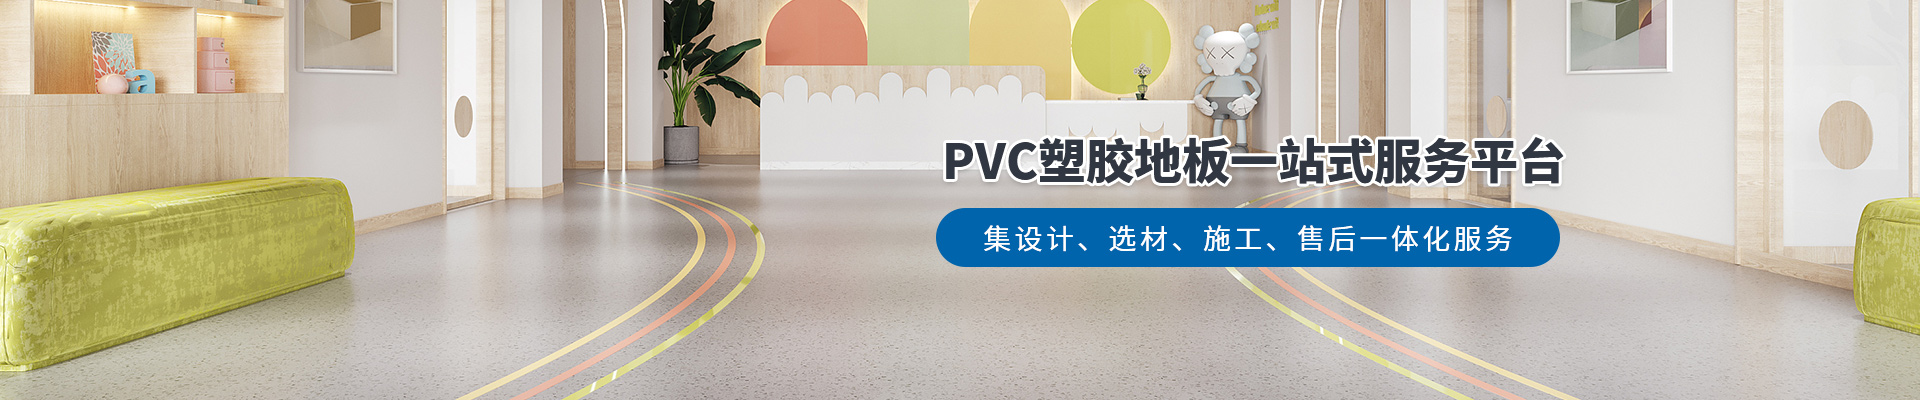 鳳城橡塑，PVC塑膠地板一站式服務平臺